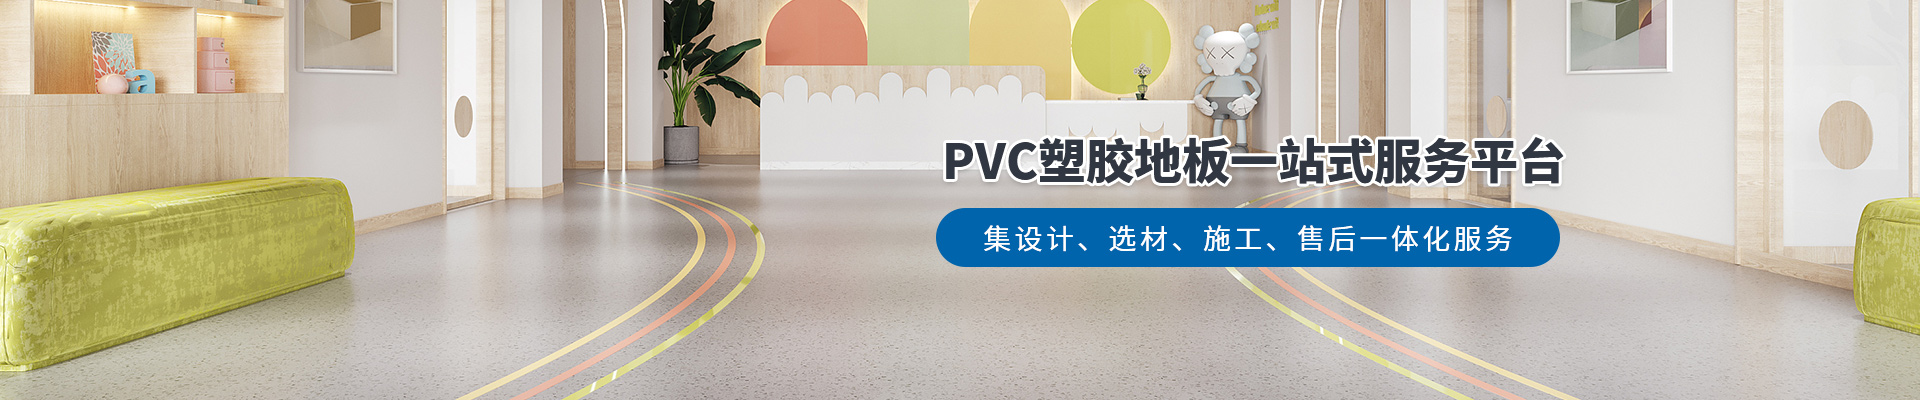 鳳城橡塑，PVC塑膠地板一站式服務平臺